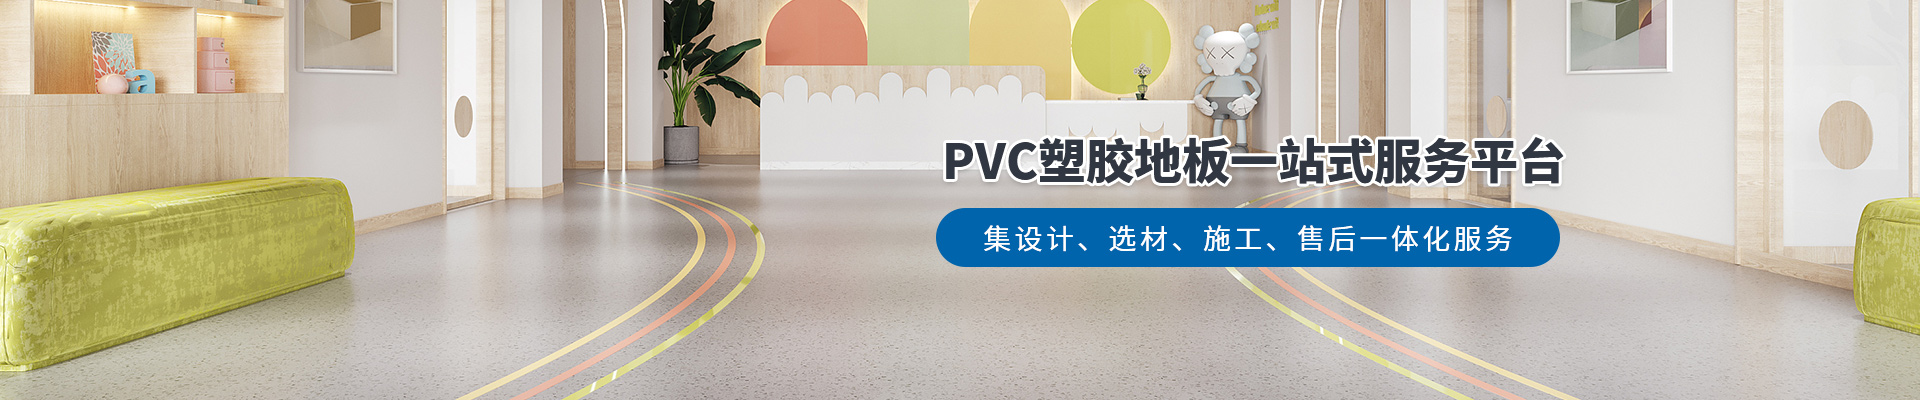 鳳城橡塑，PVC塑膠地板一站式服務平臺